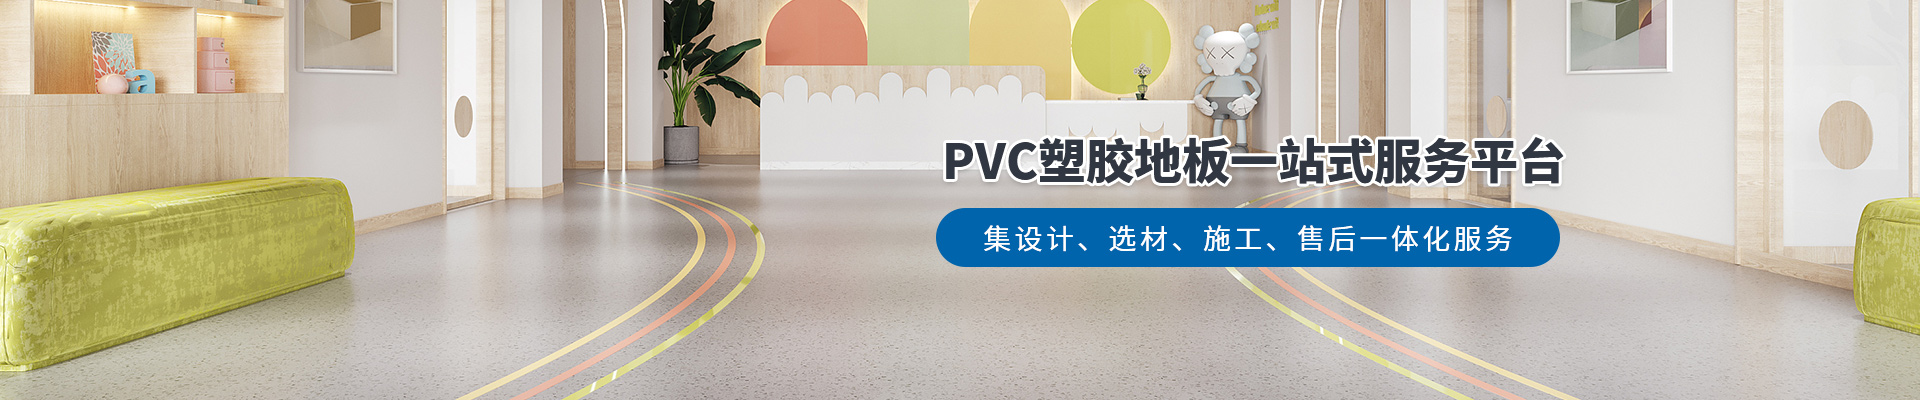 鳳城橡塑，PVC塑膠地板一站式服務平臺